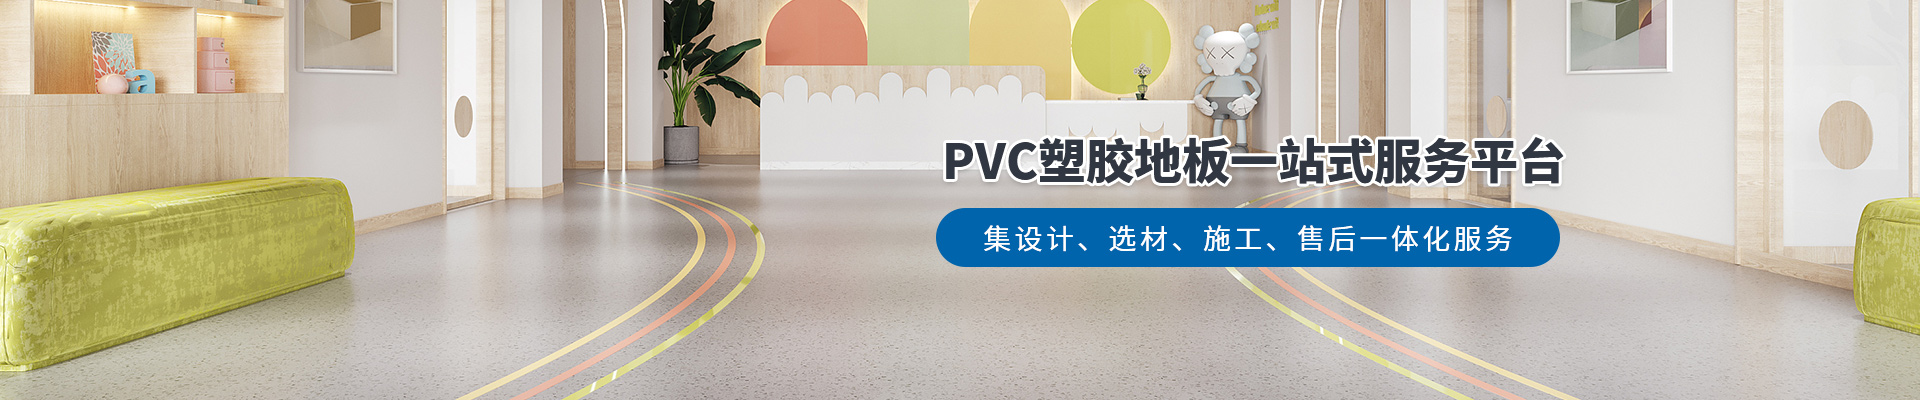 鳳城橡塑，PVC塑膠地板一站式服務平臺